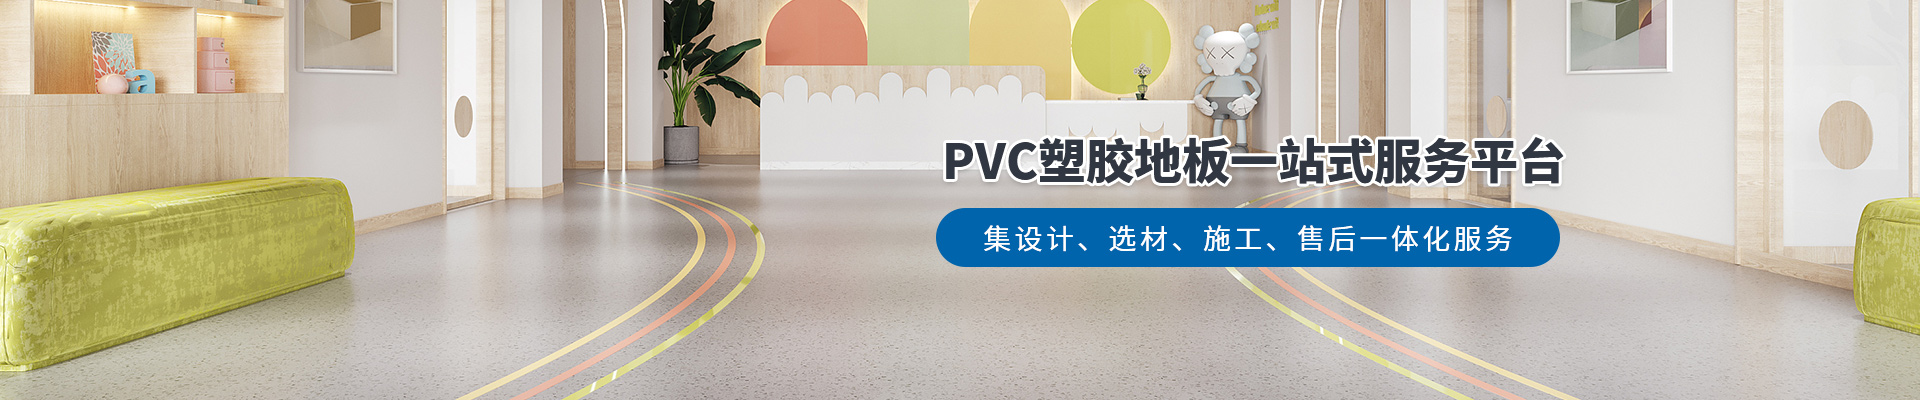 鳳城橡塑，PVC塑膠地板一站式服務平臺